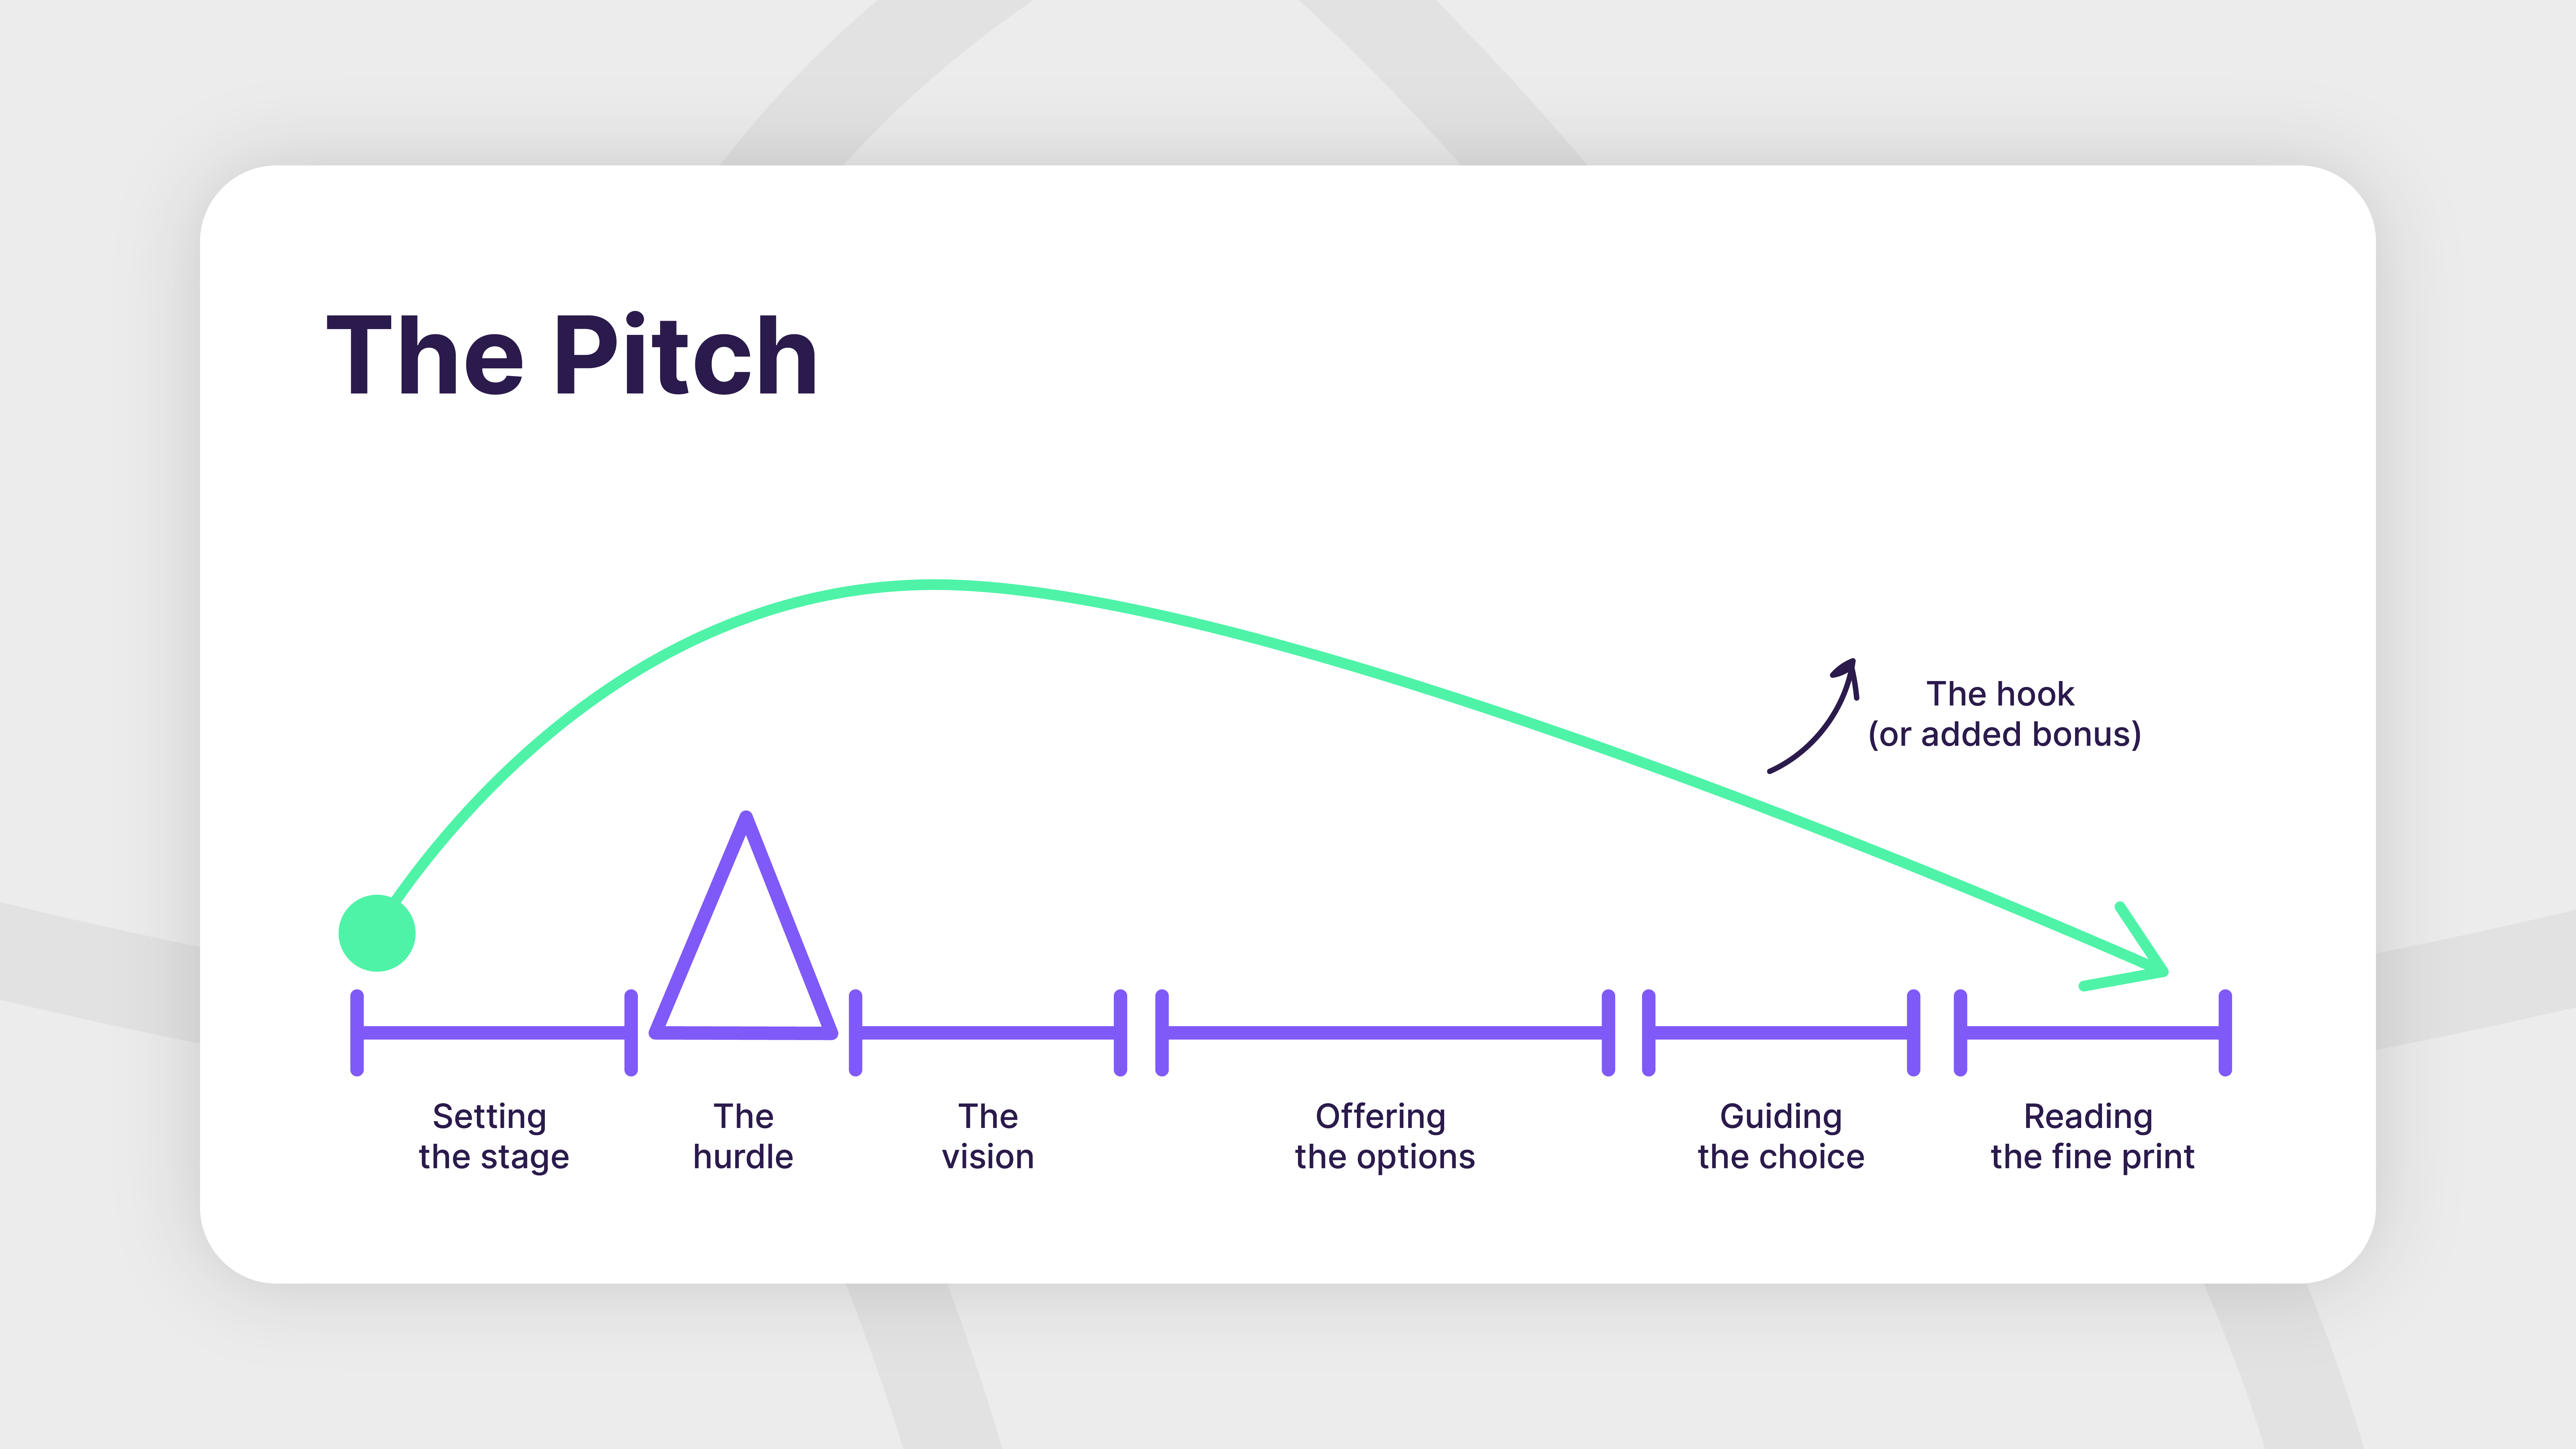 The pitch presentation narrative